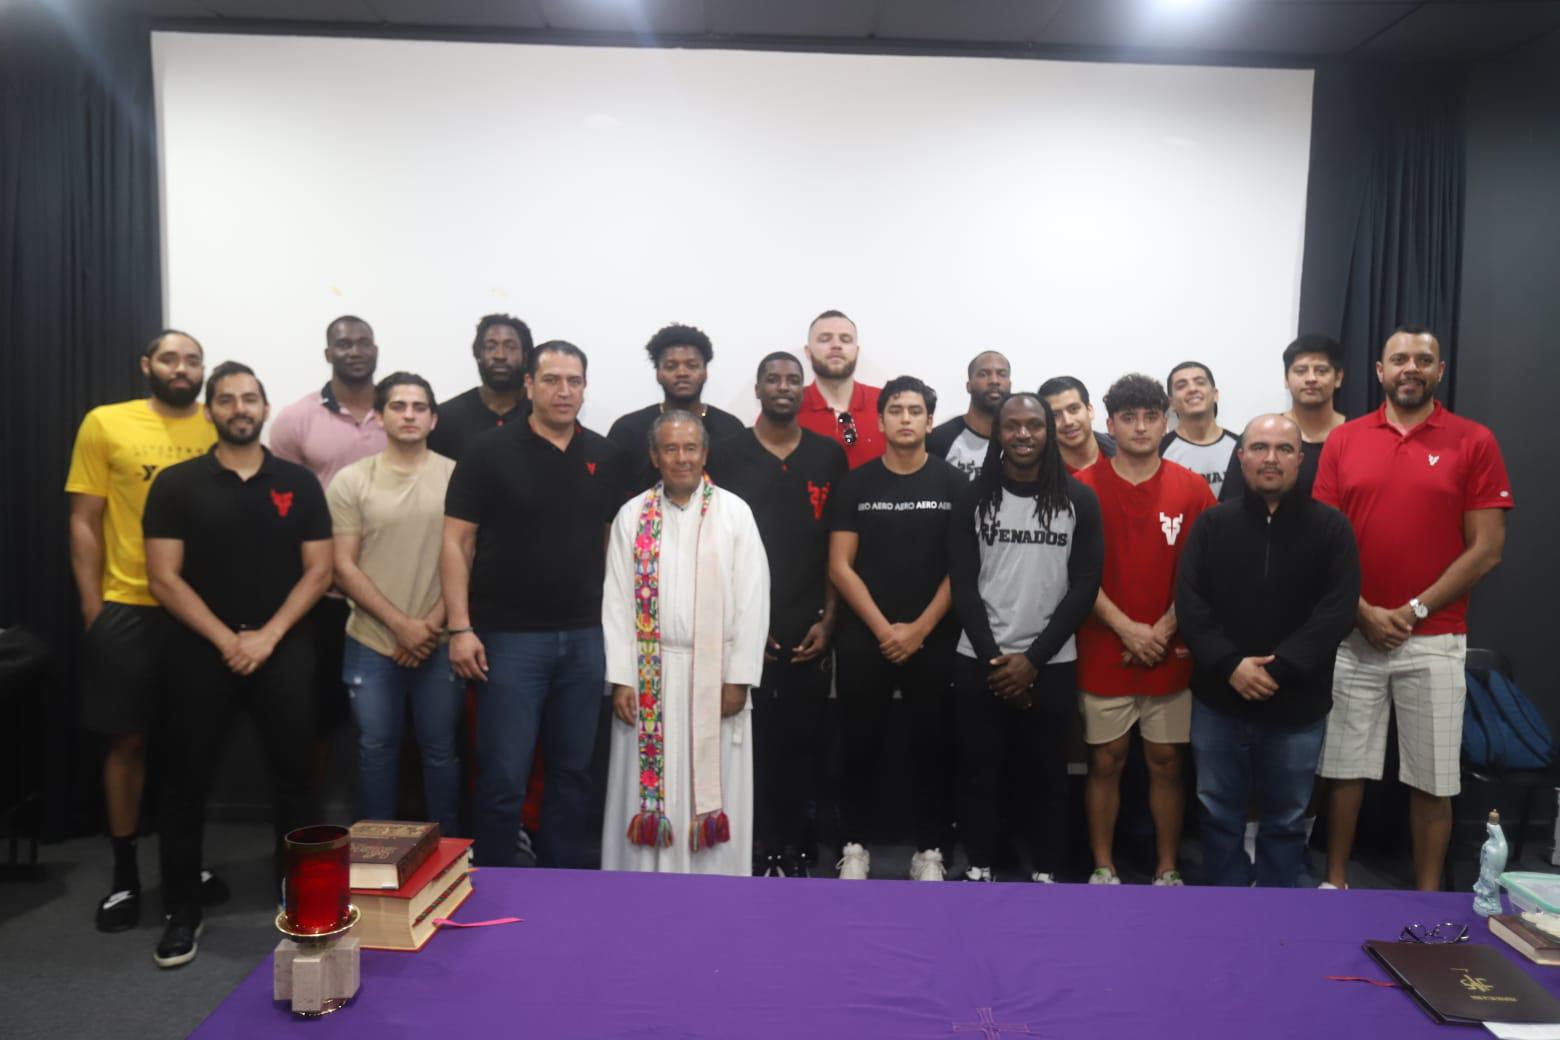 $!Al final, integrantes del equipo de Venados Basketball, directivos y cuerpo técnico asistieron a la misa de acción de gracias se tomaron la fotografía del recuerdo con el Padre Mario.